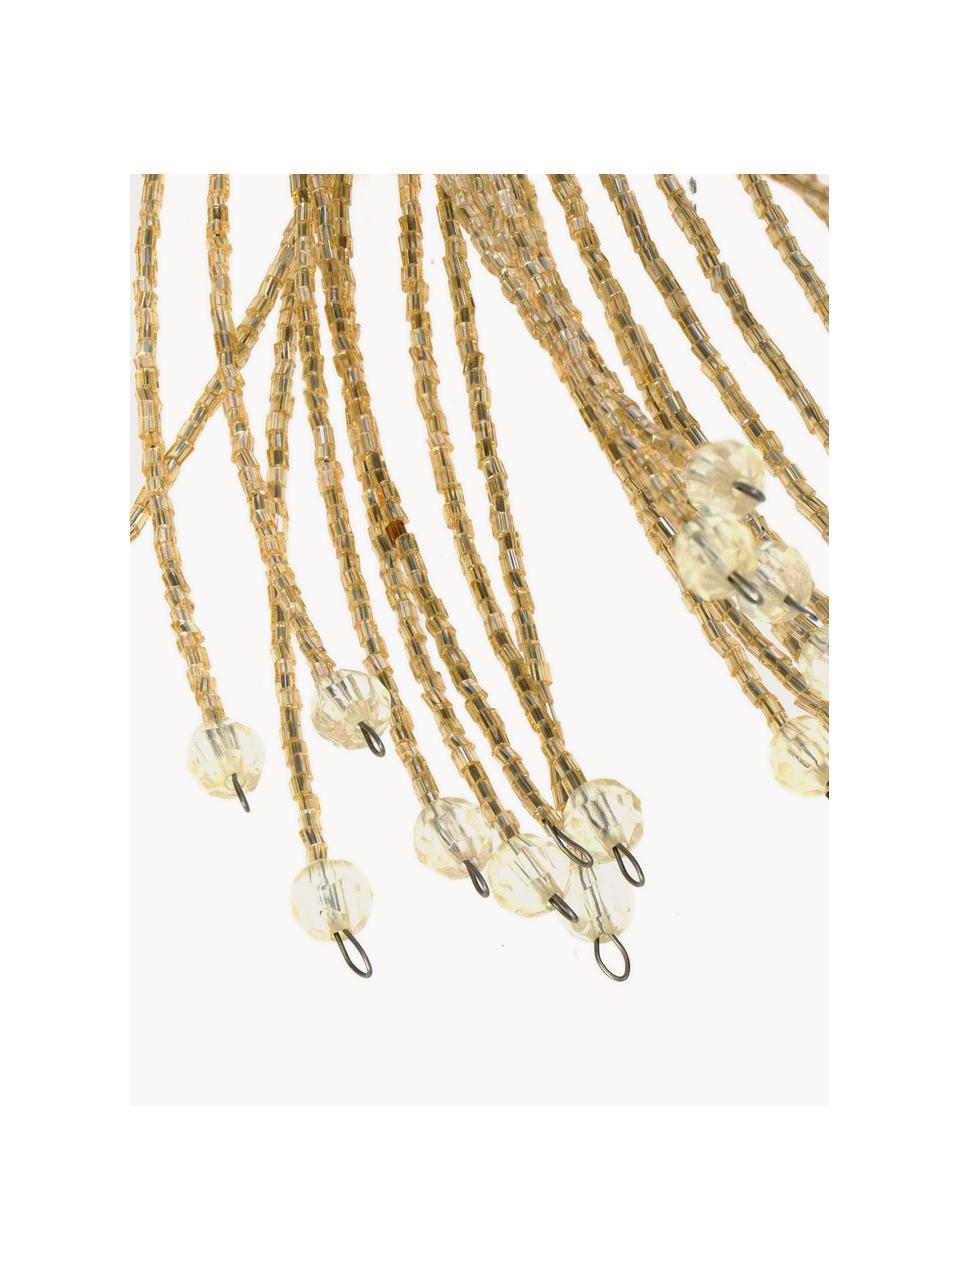 Ozdoby na vánoční stromeček z korálků Beads, 2 ks, Sklo, potažený kov, Šampaň, Ø 40 cm, V 58 cm